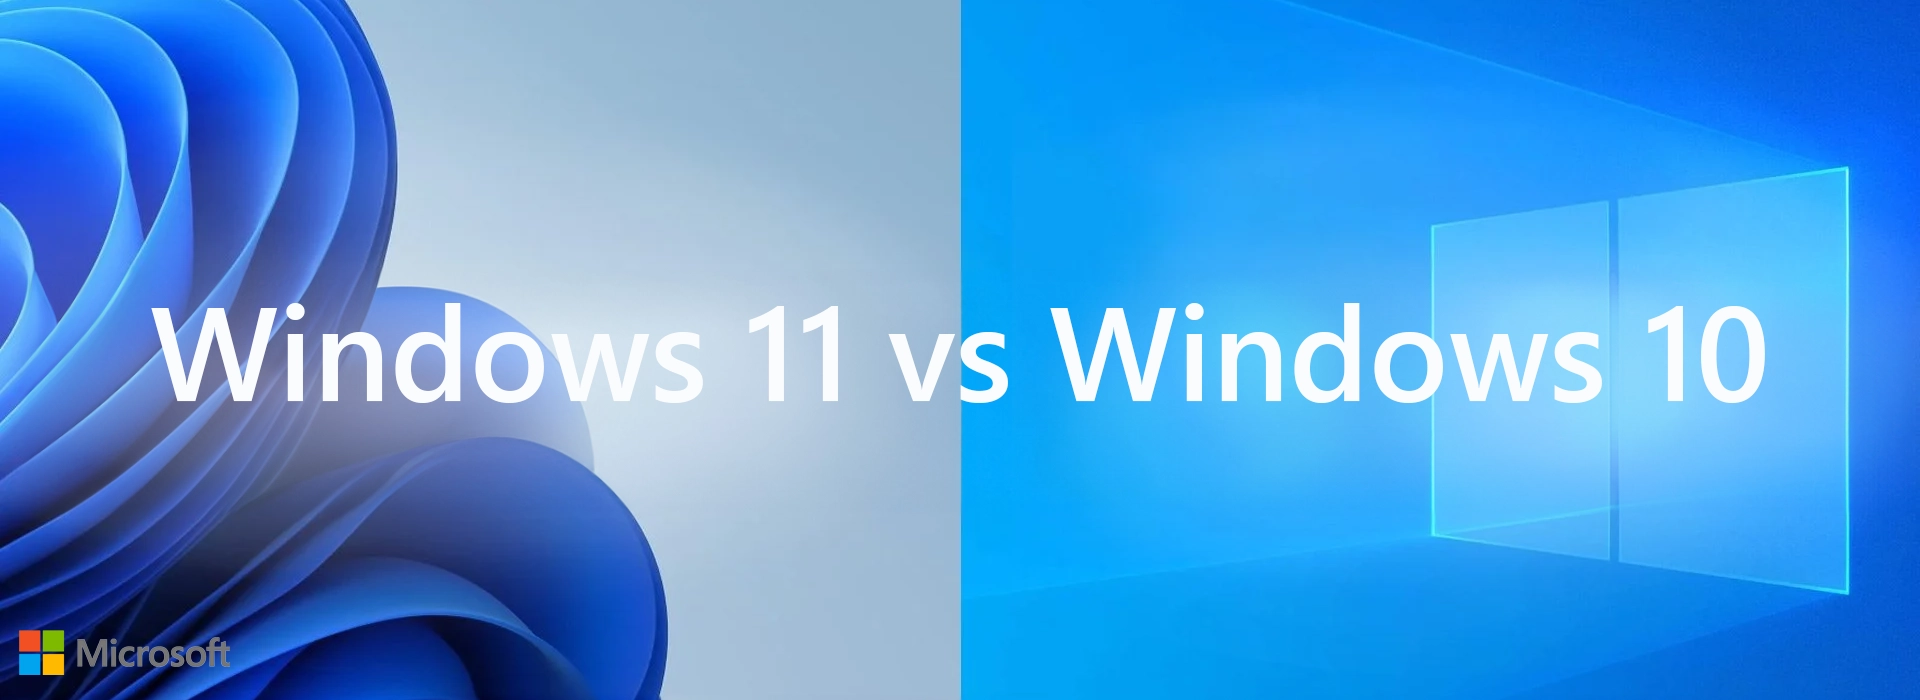 HĐH Windows 11 vs Windows 10: So sánh toàn diện về tính năng, hiệu suất